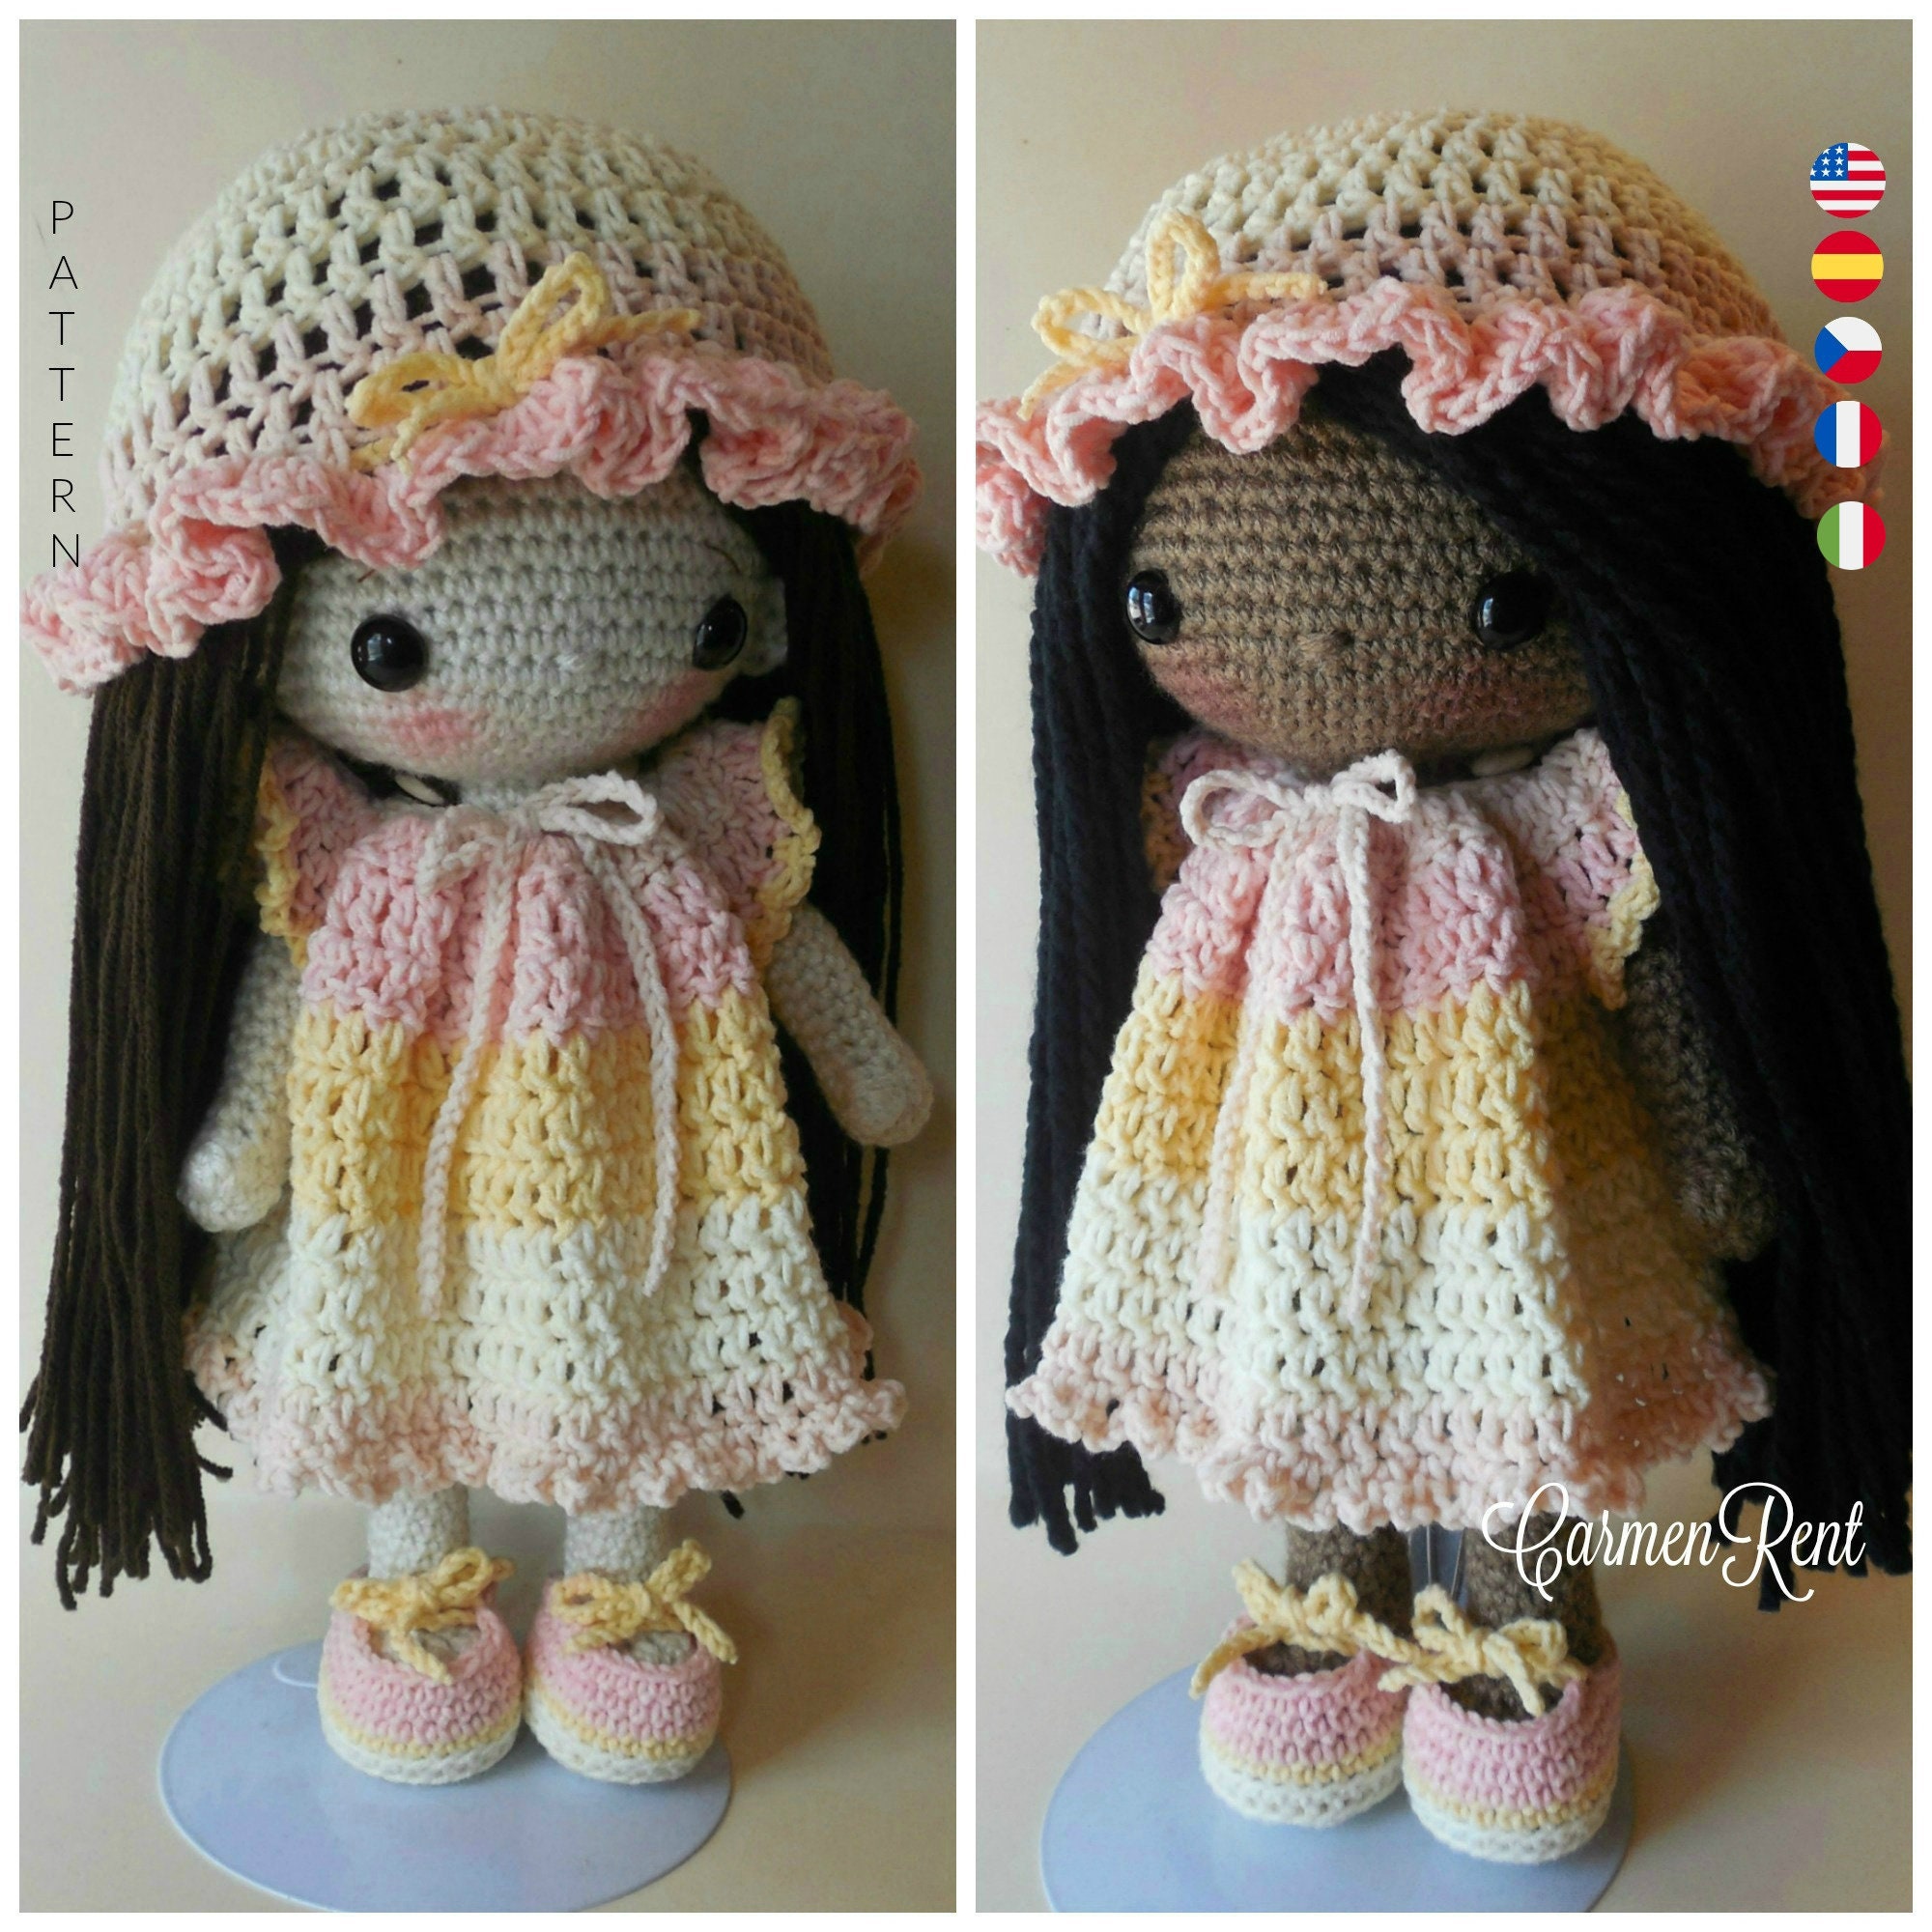 Amigurumi Crochet Doll Adele, Crochet Pattern, Crochet Doll